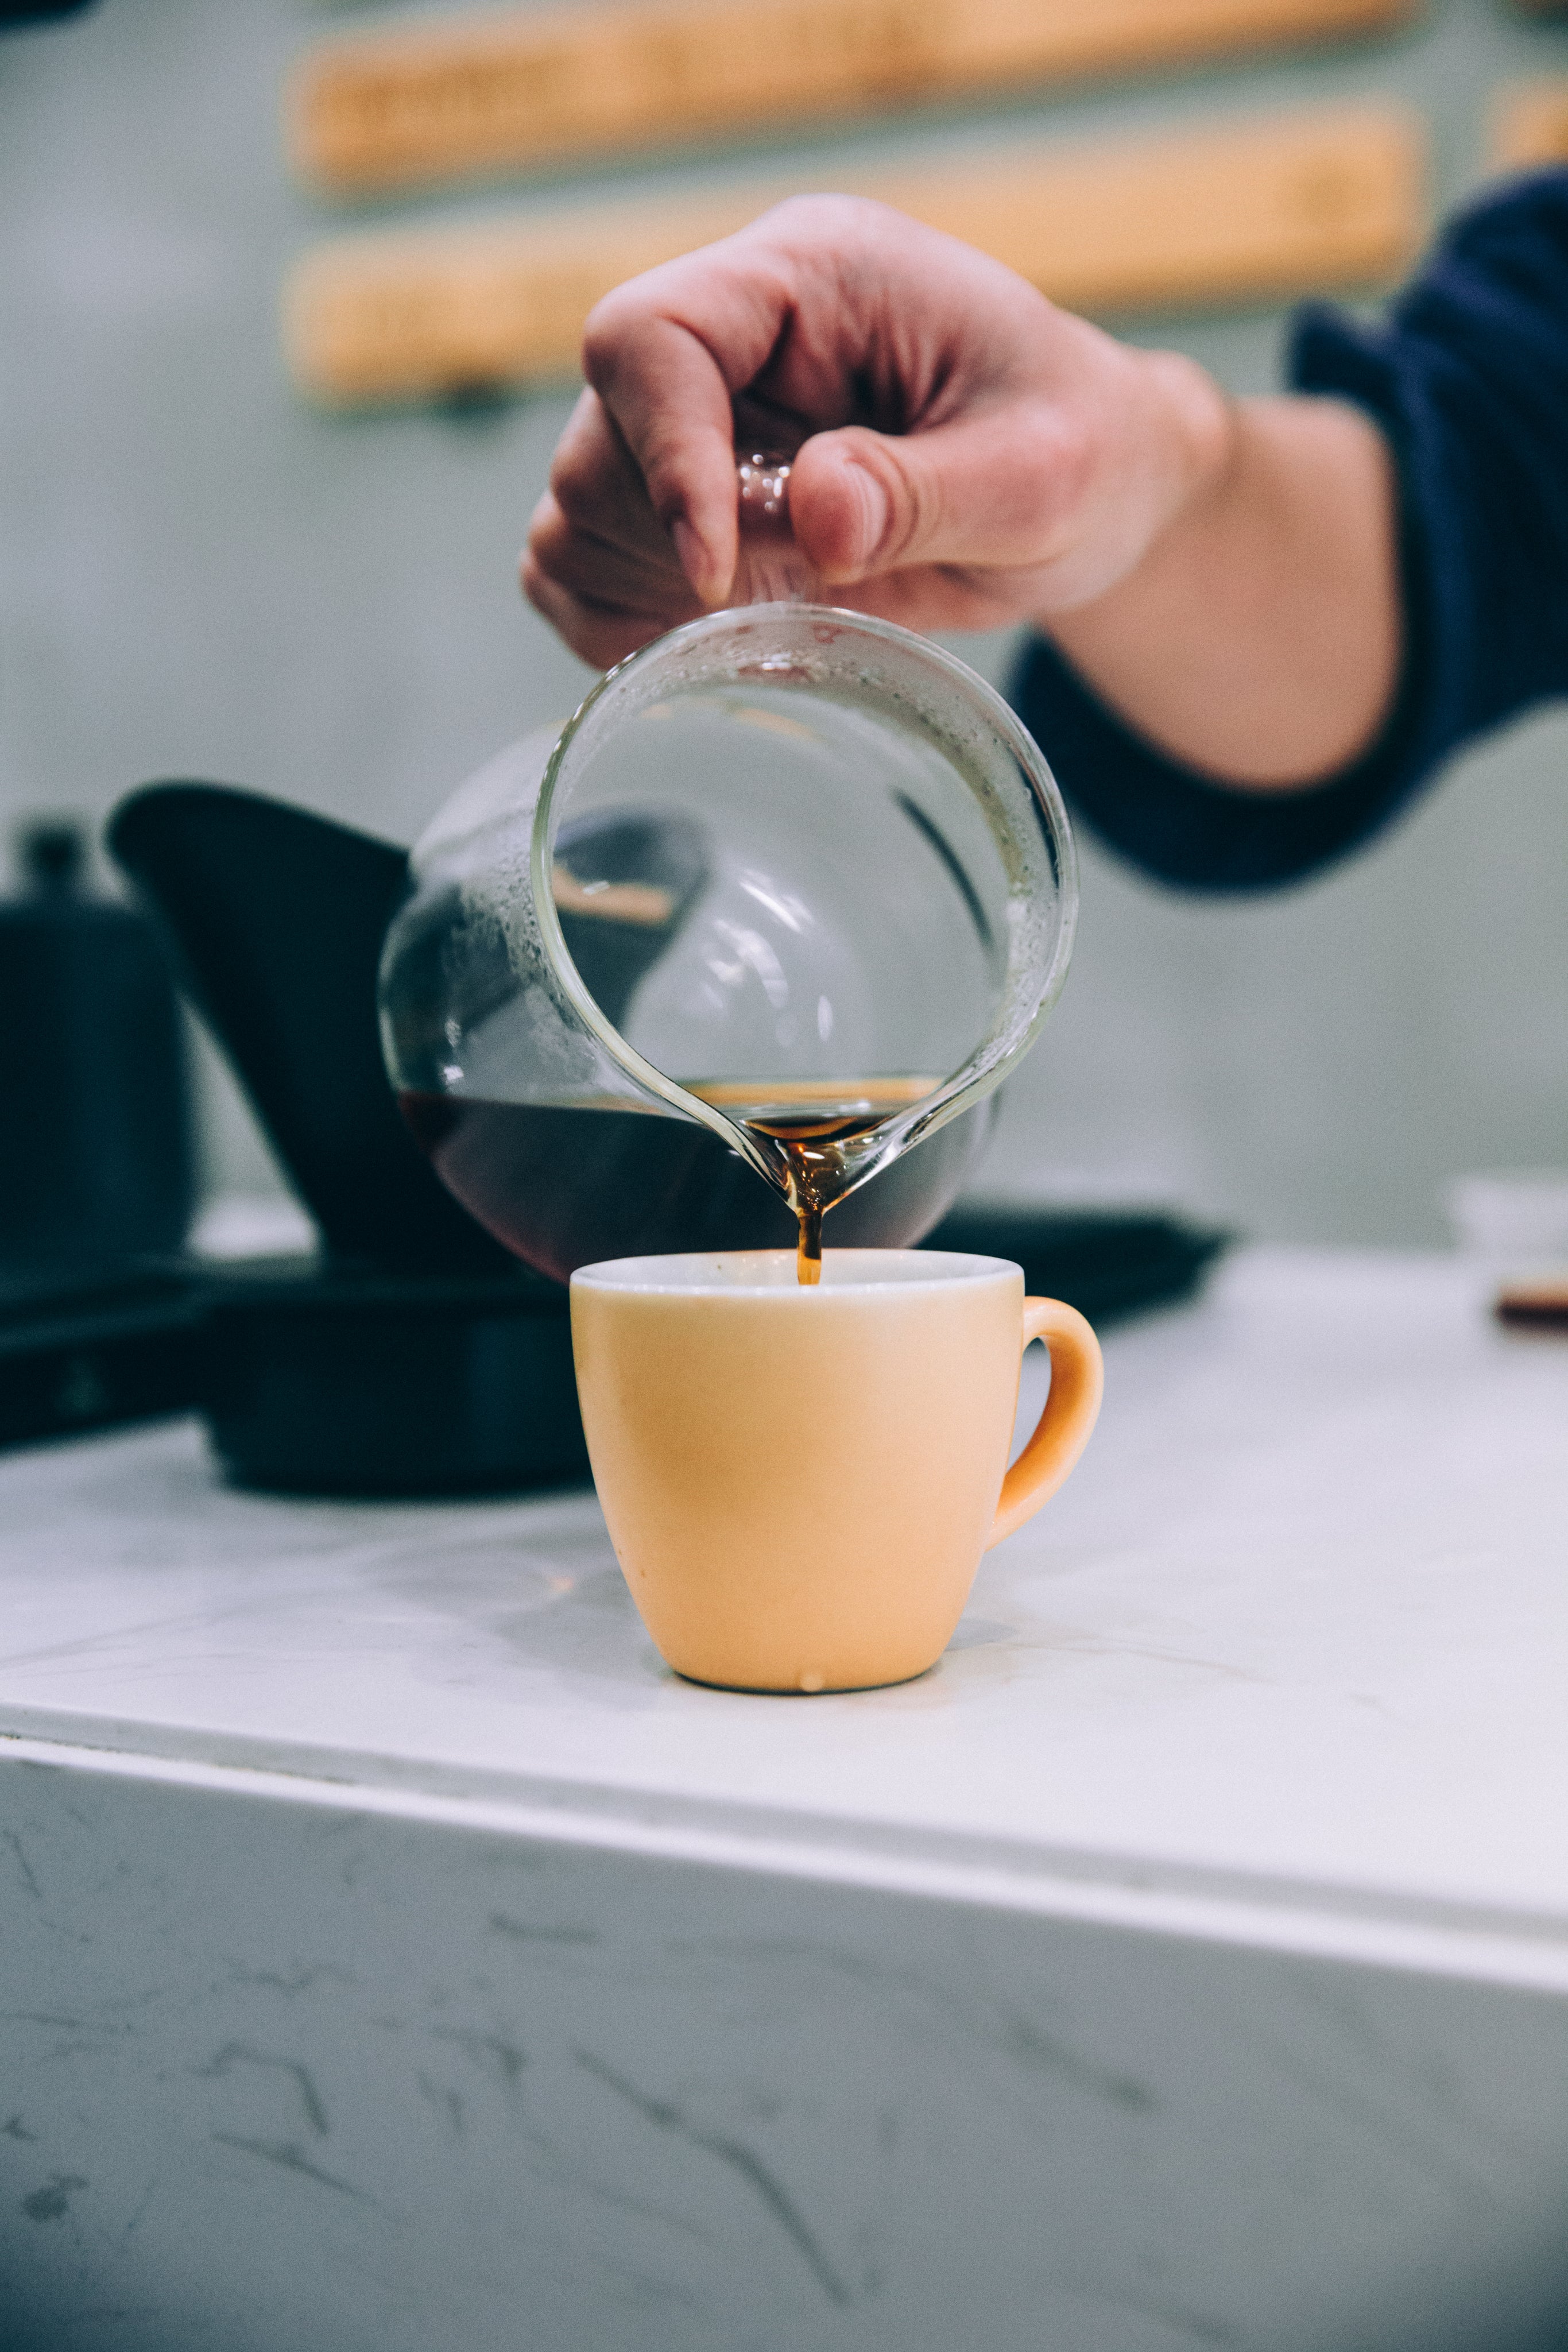 filterkaffe bliver hældt i kaffekop 